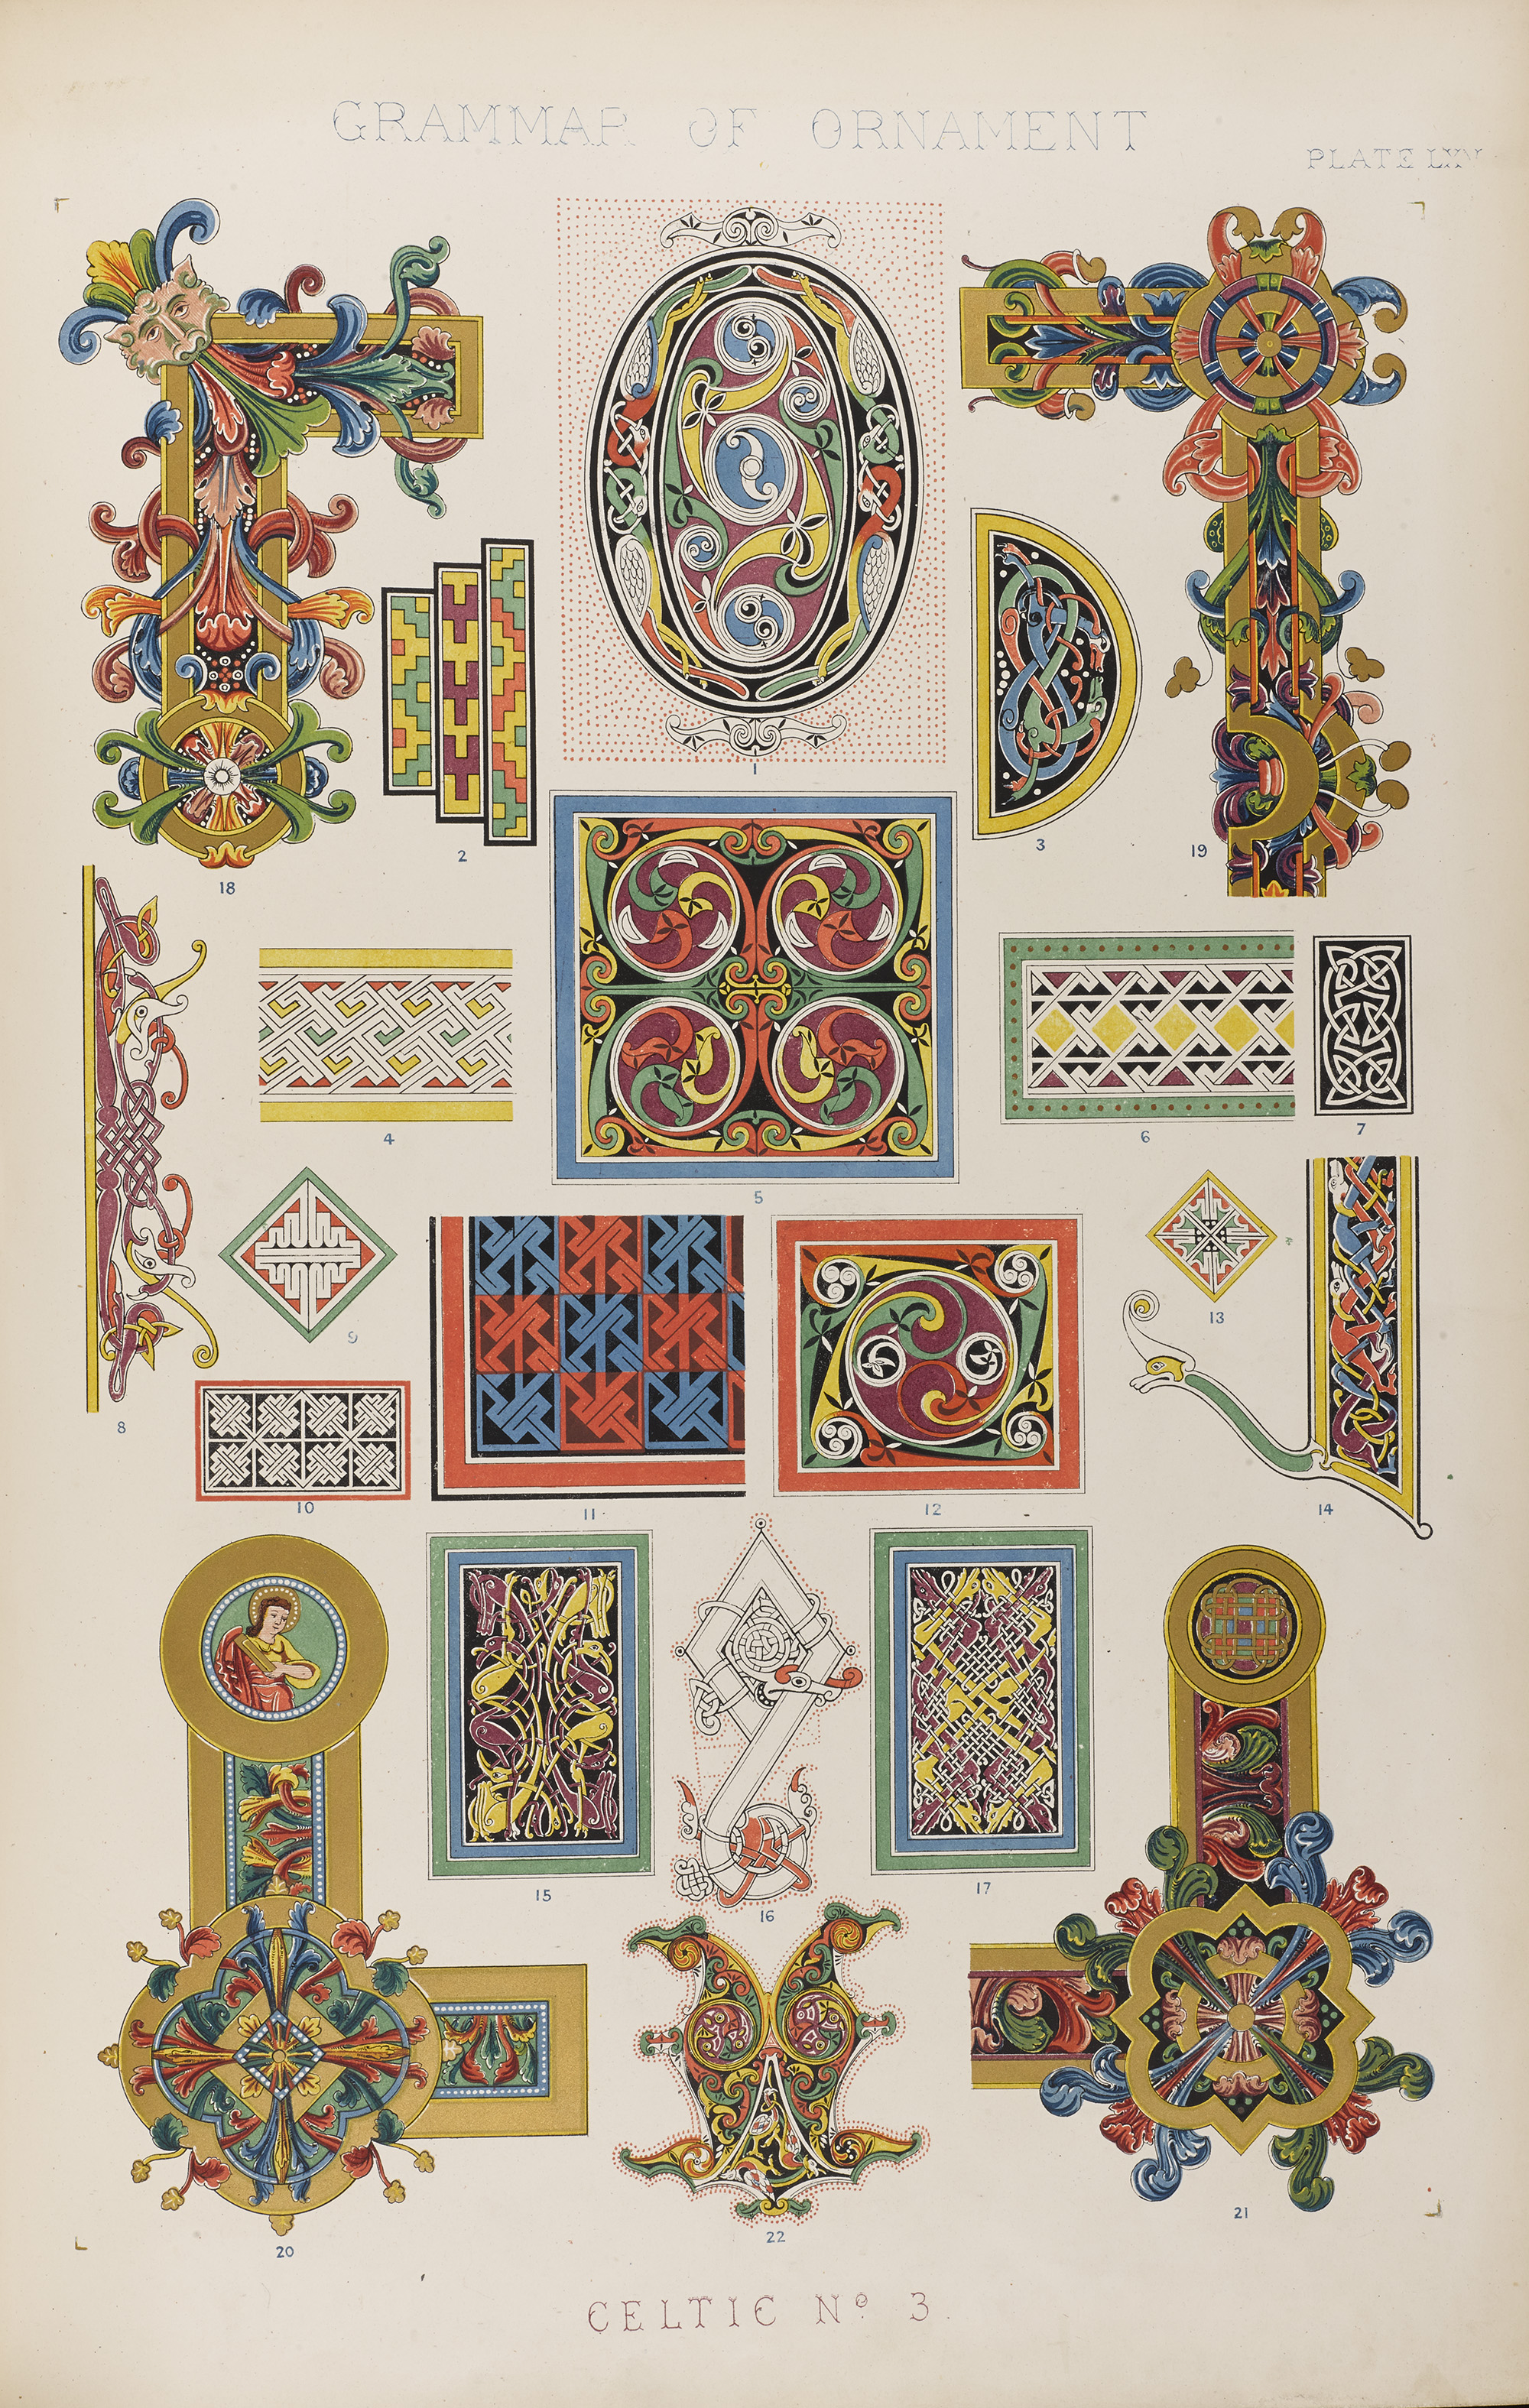 Owen Jones' Grammar of Ornament (1856)